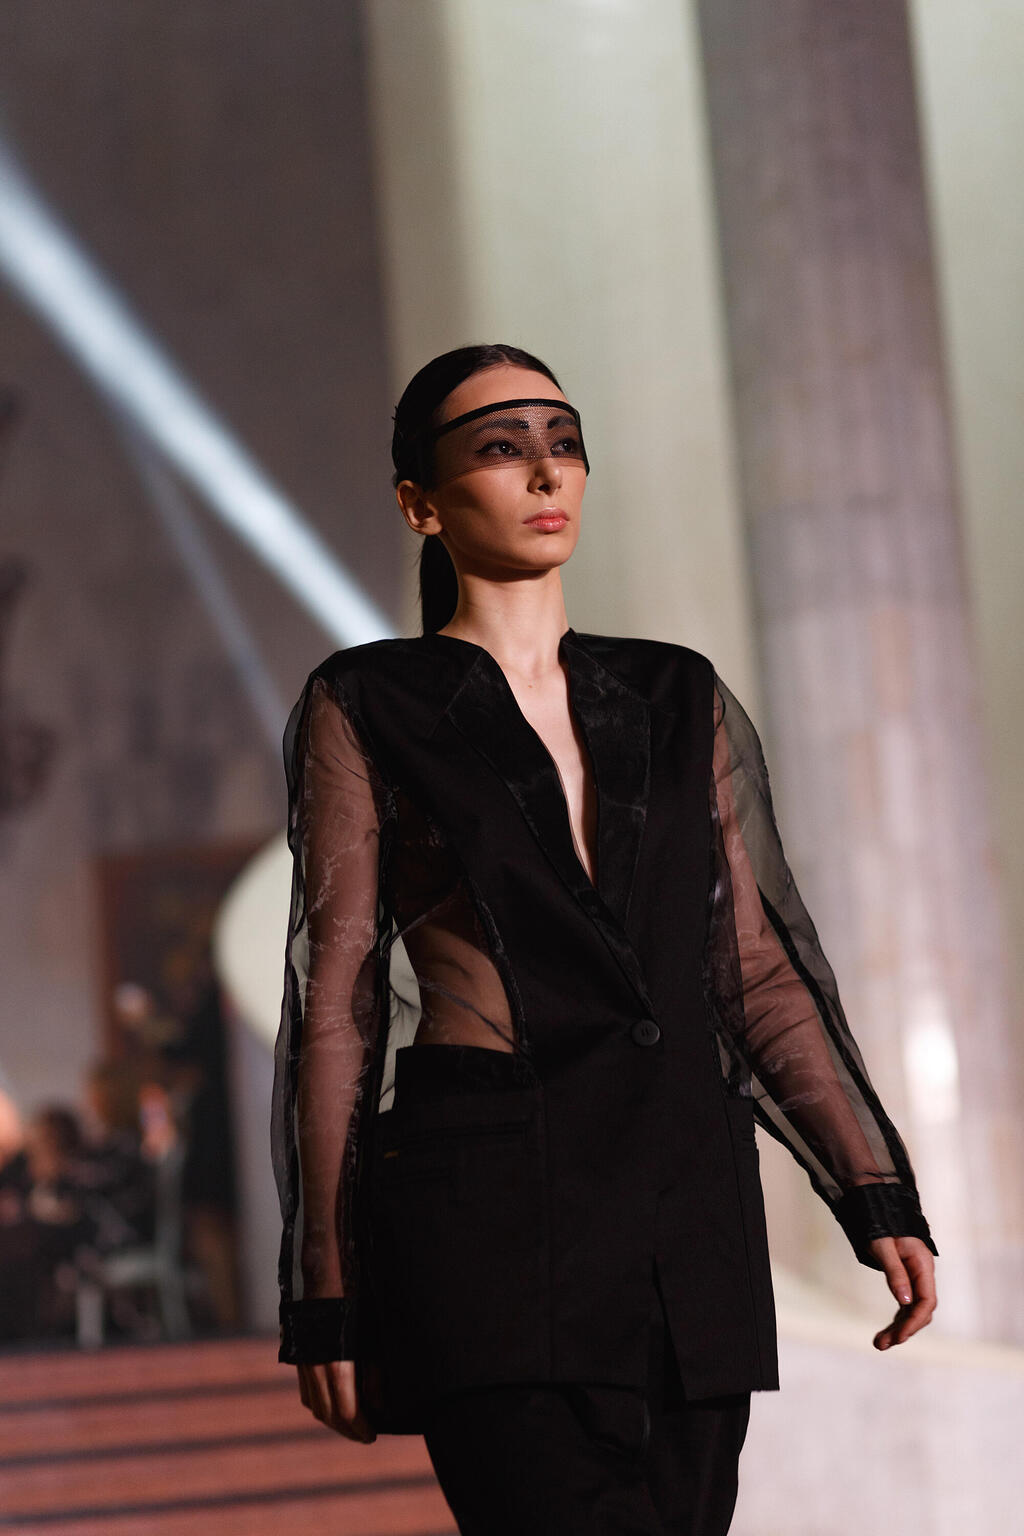 תצוגת אופנה של Vague במסגרת Metrica בגאורגיה